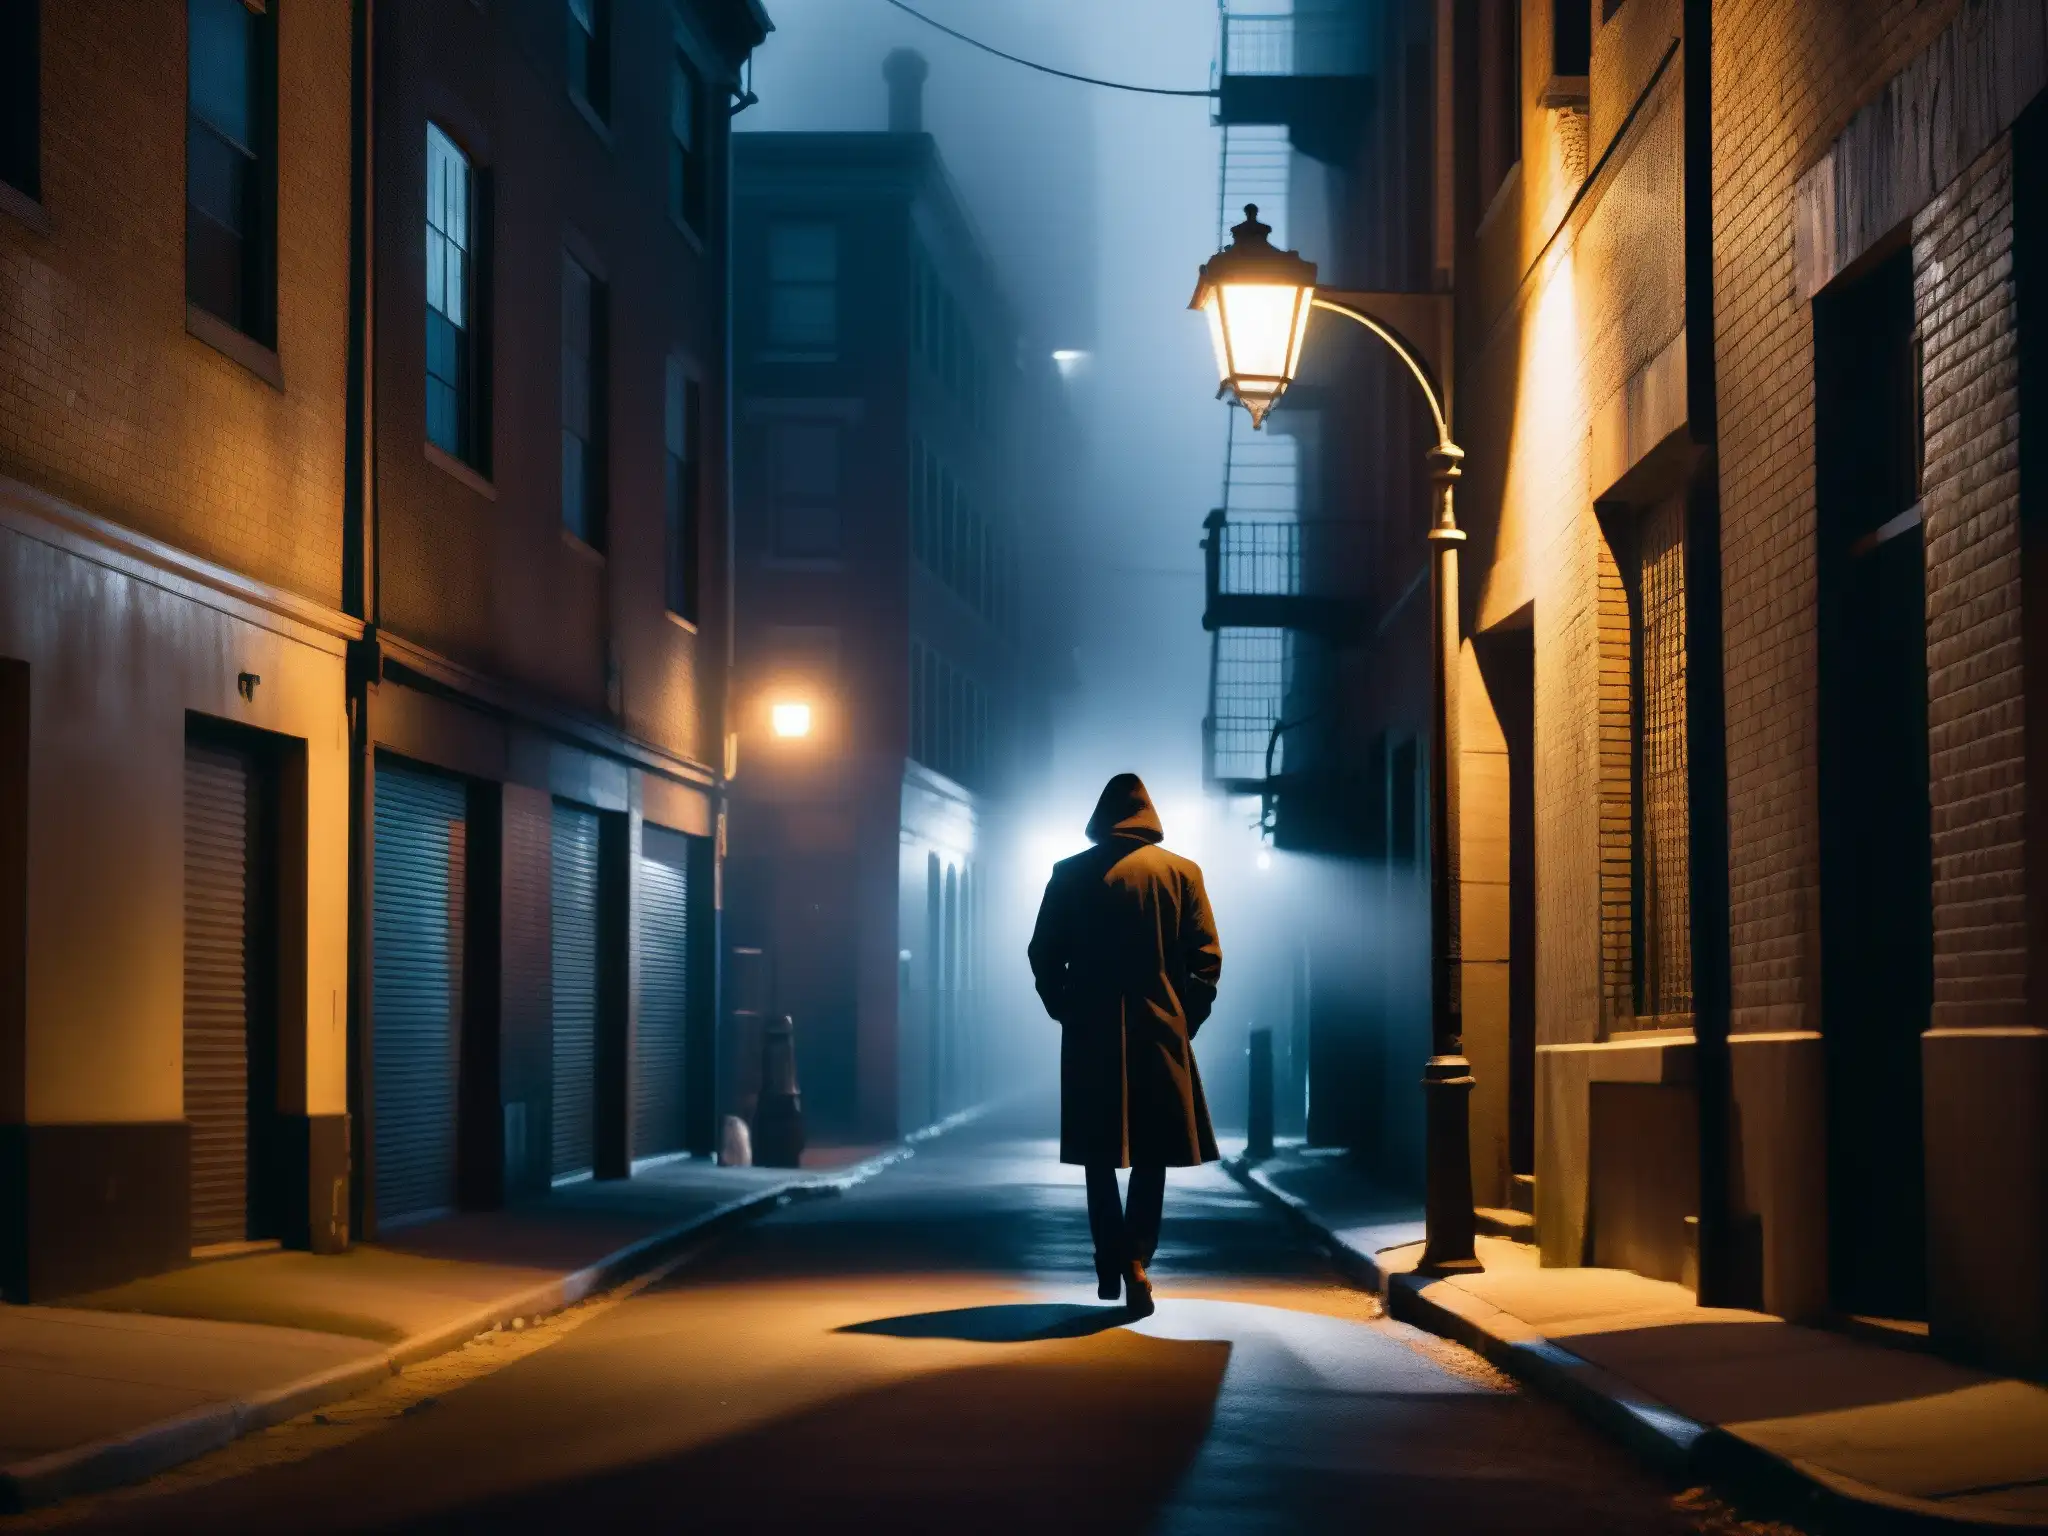 Alleyway nocturno con niebla, sombras alargadas y figura misteriosa, capturando el impacto psicológico de leyendas urbanas